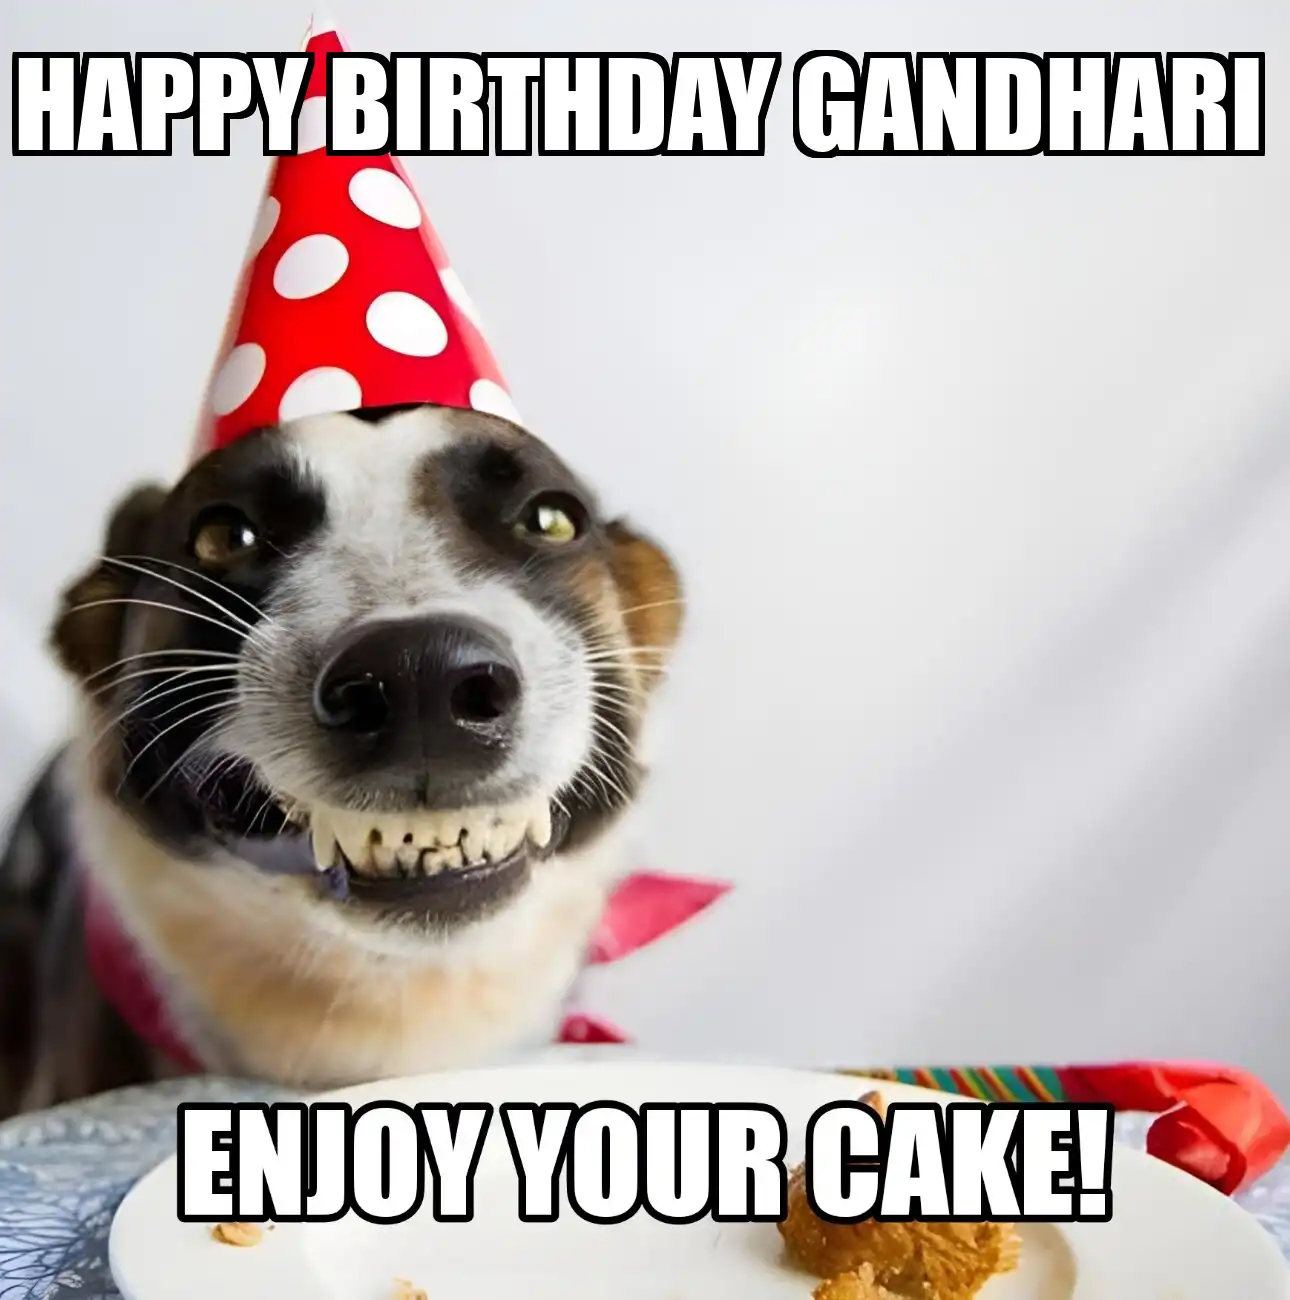 Happy Birthday Gandhari Enjoy Your Cake Dog Meme